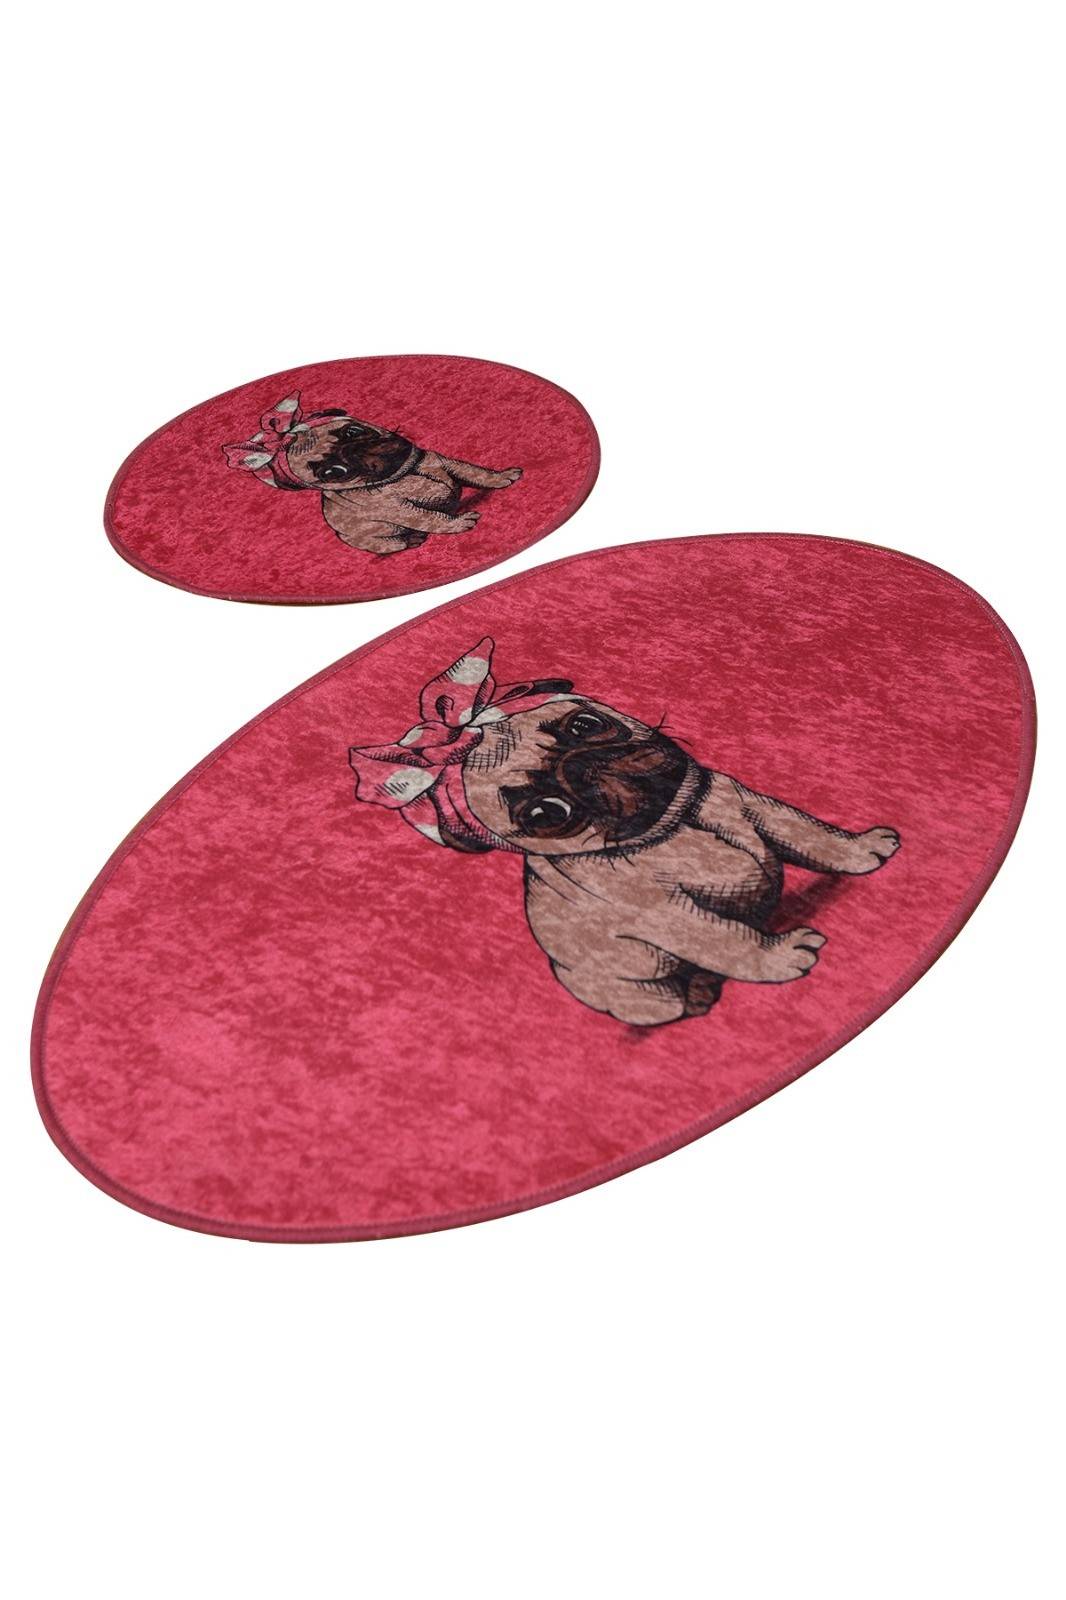 Juego de 2 alfombras de baño ovaladas Pinkydog 60x100cm Puppy Pink